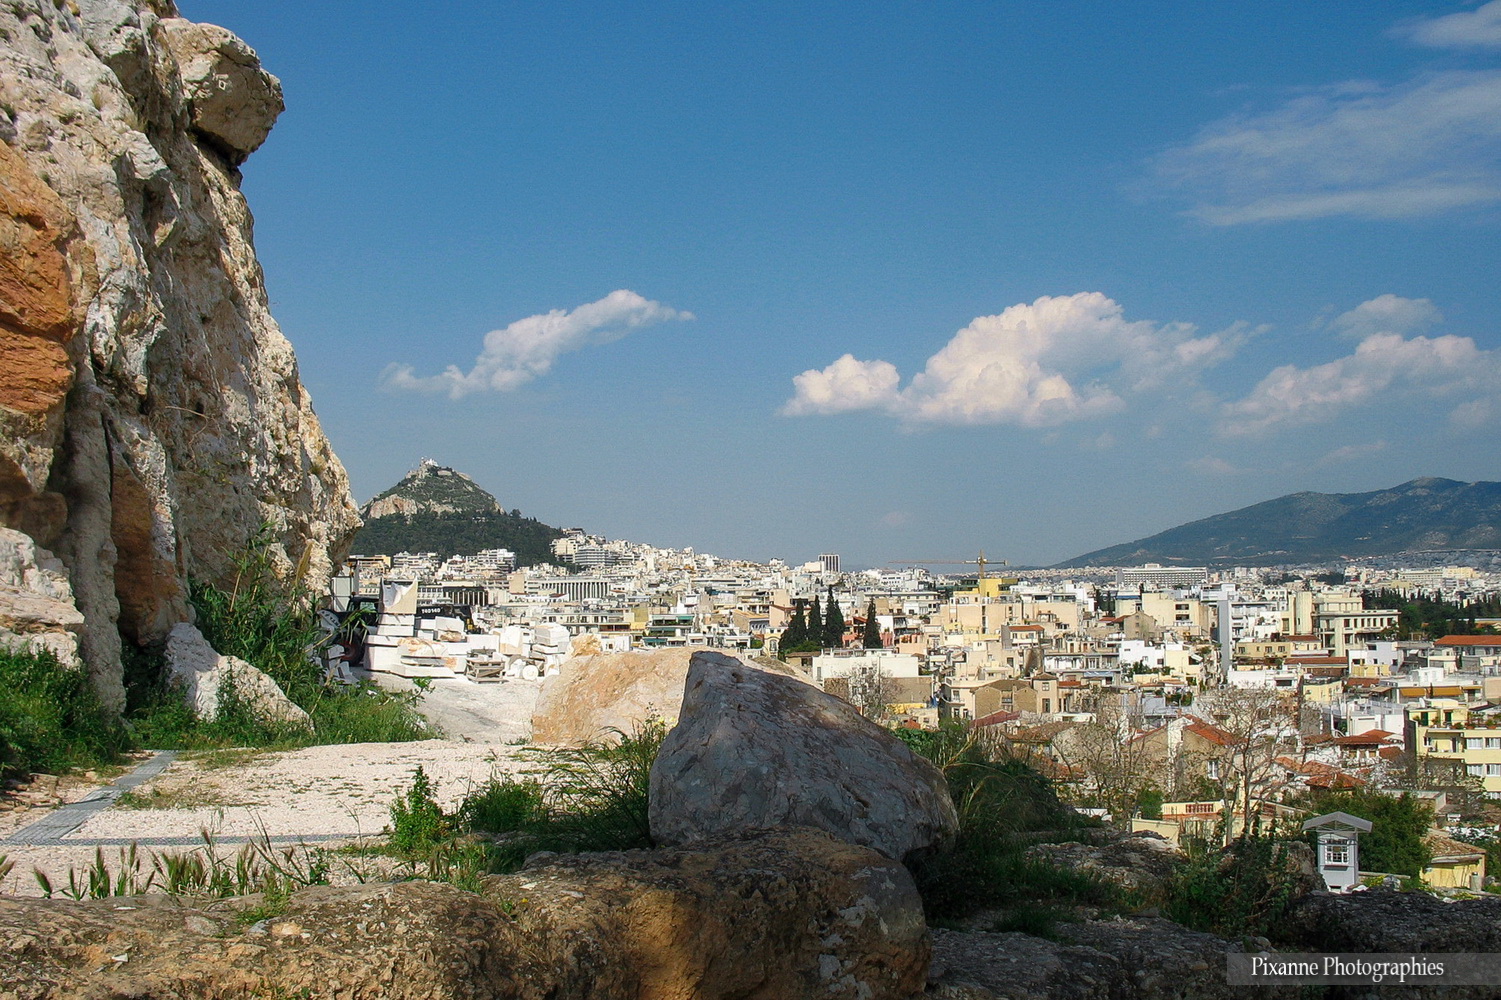 Europe, Grèce, Attique, Athènes, Acropole, Souvenirs de Voyages, Pixanne Photographies